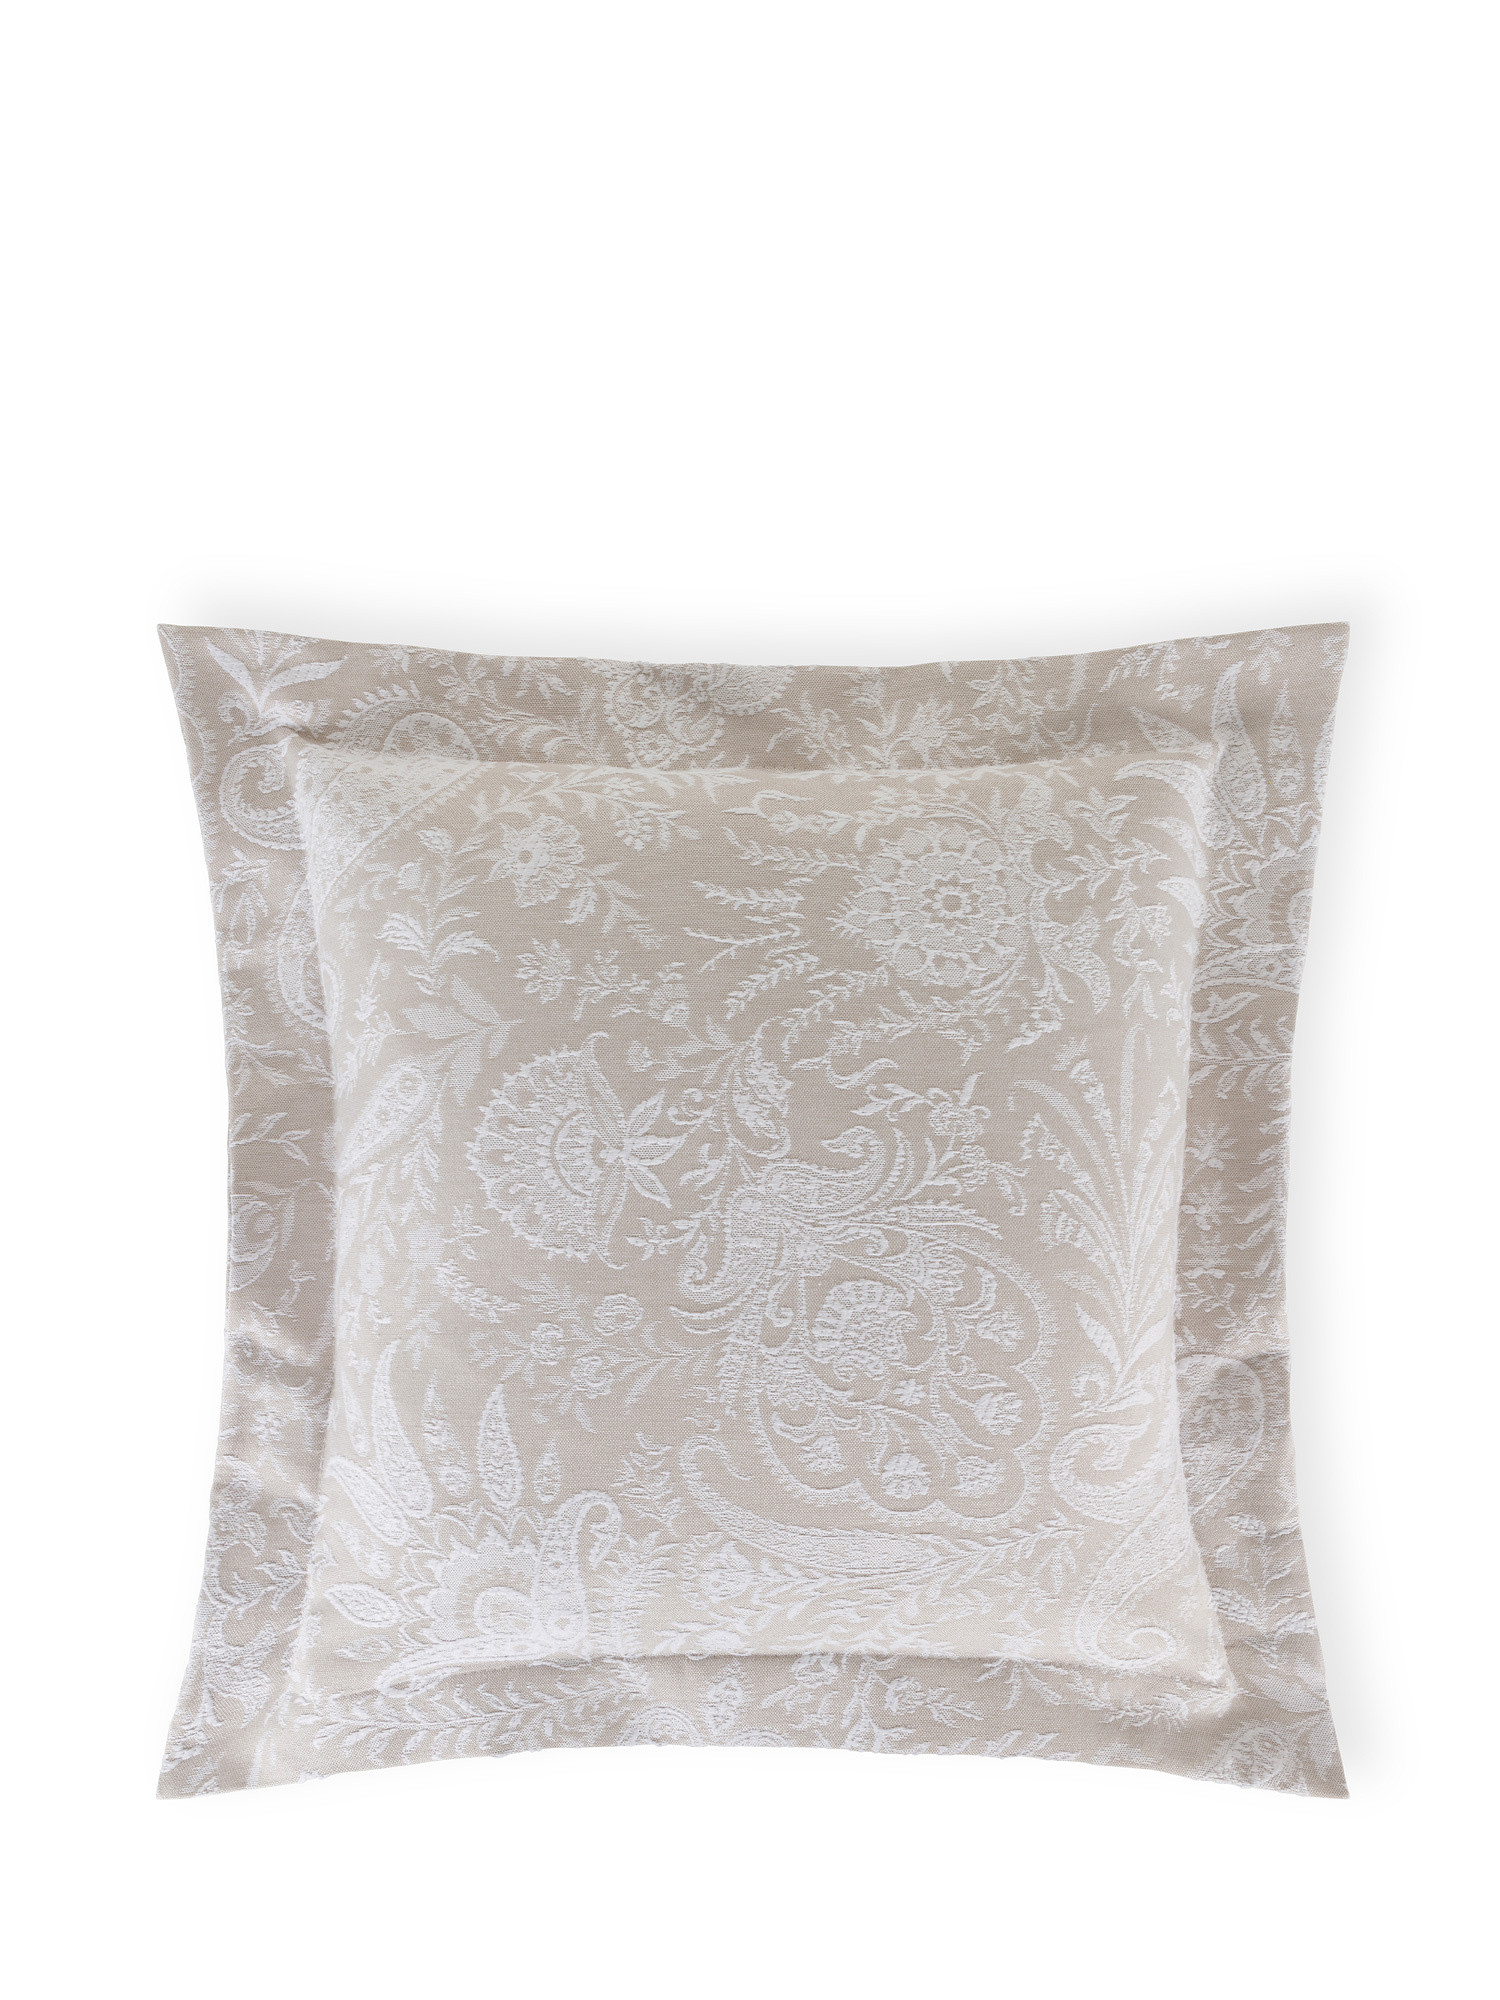 Portofino cushion with paisley pattern, , large image number 0